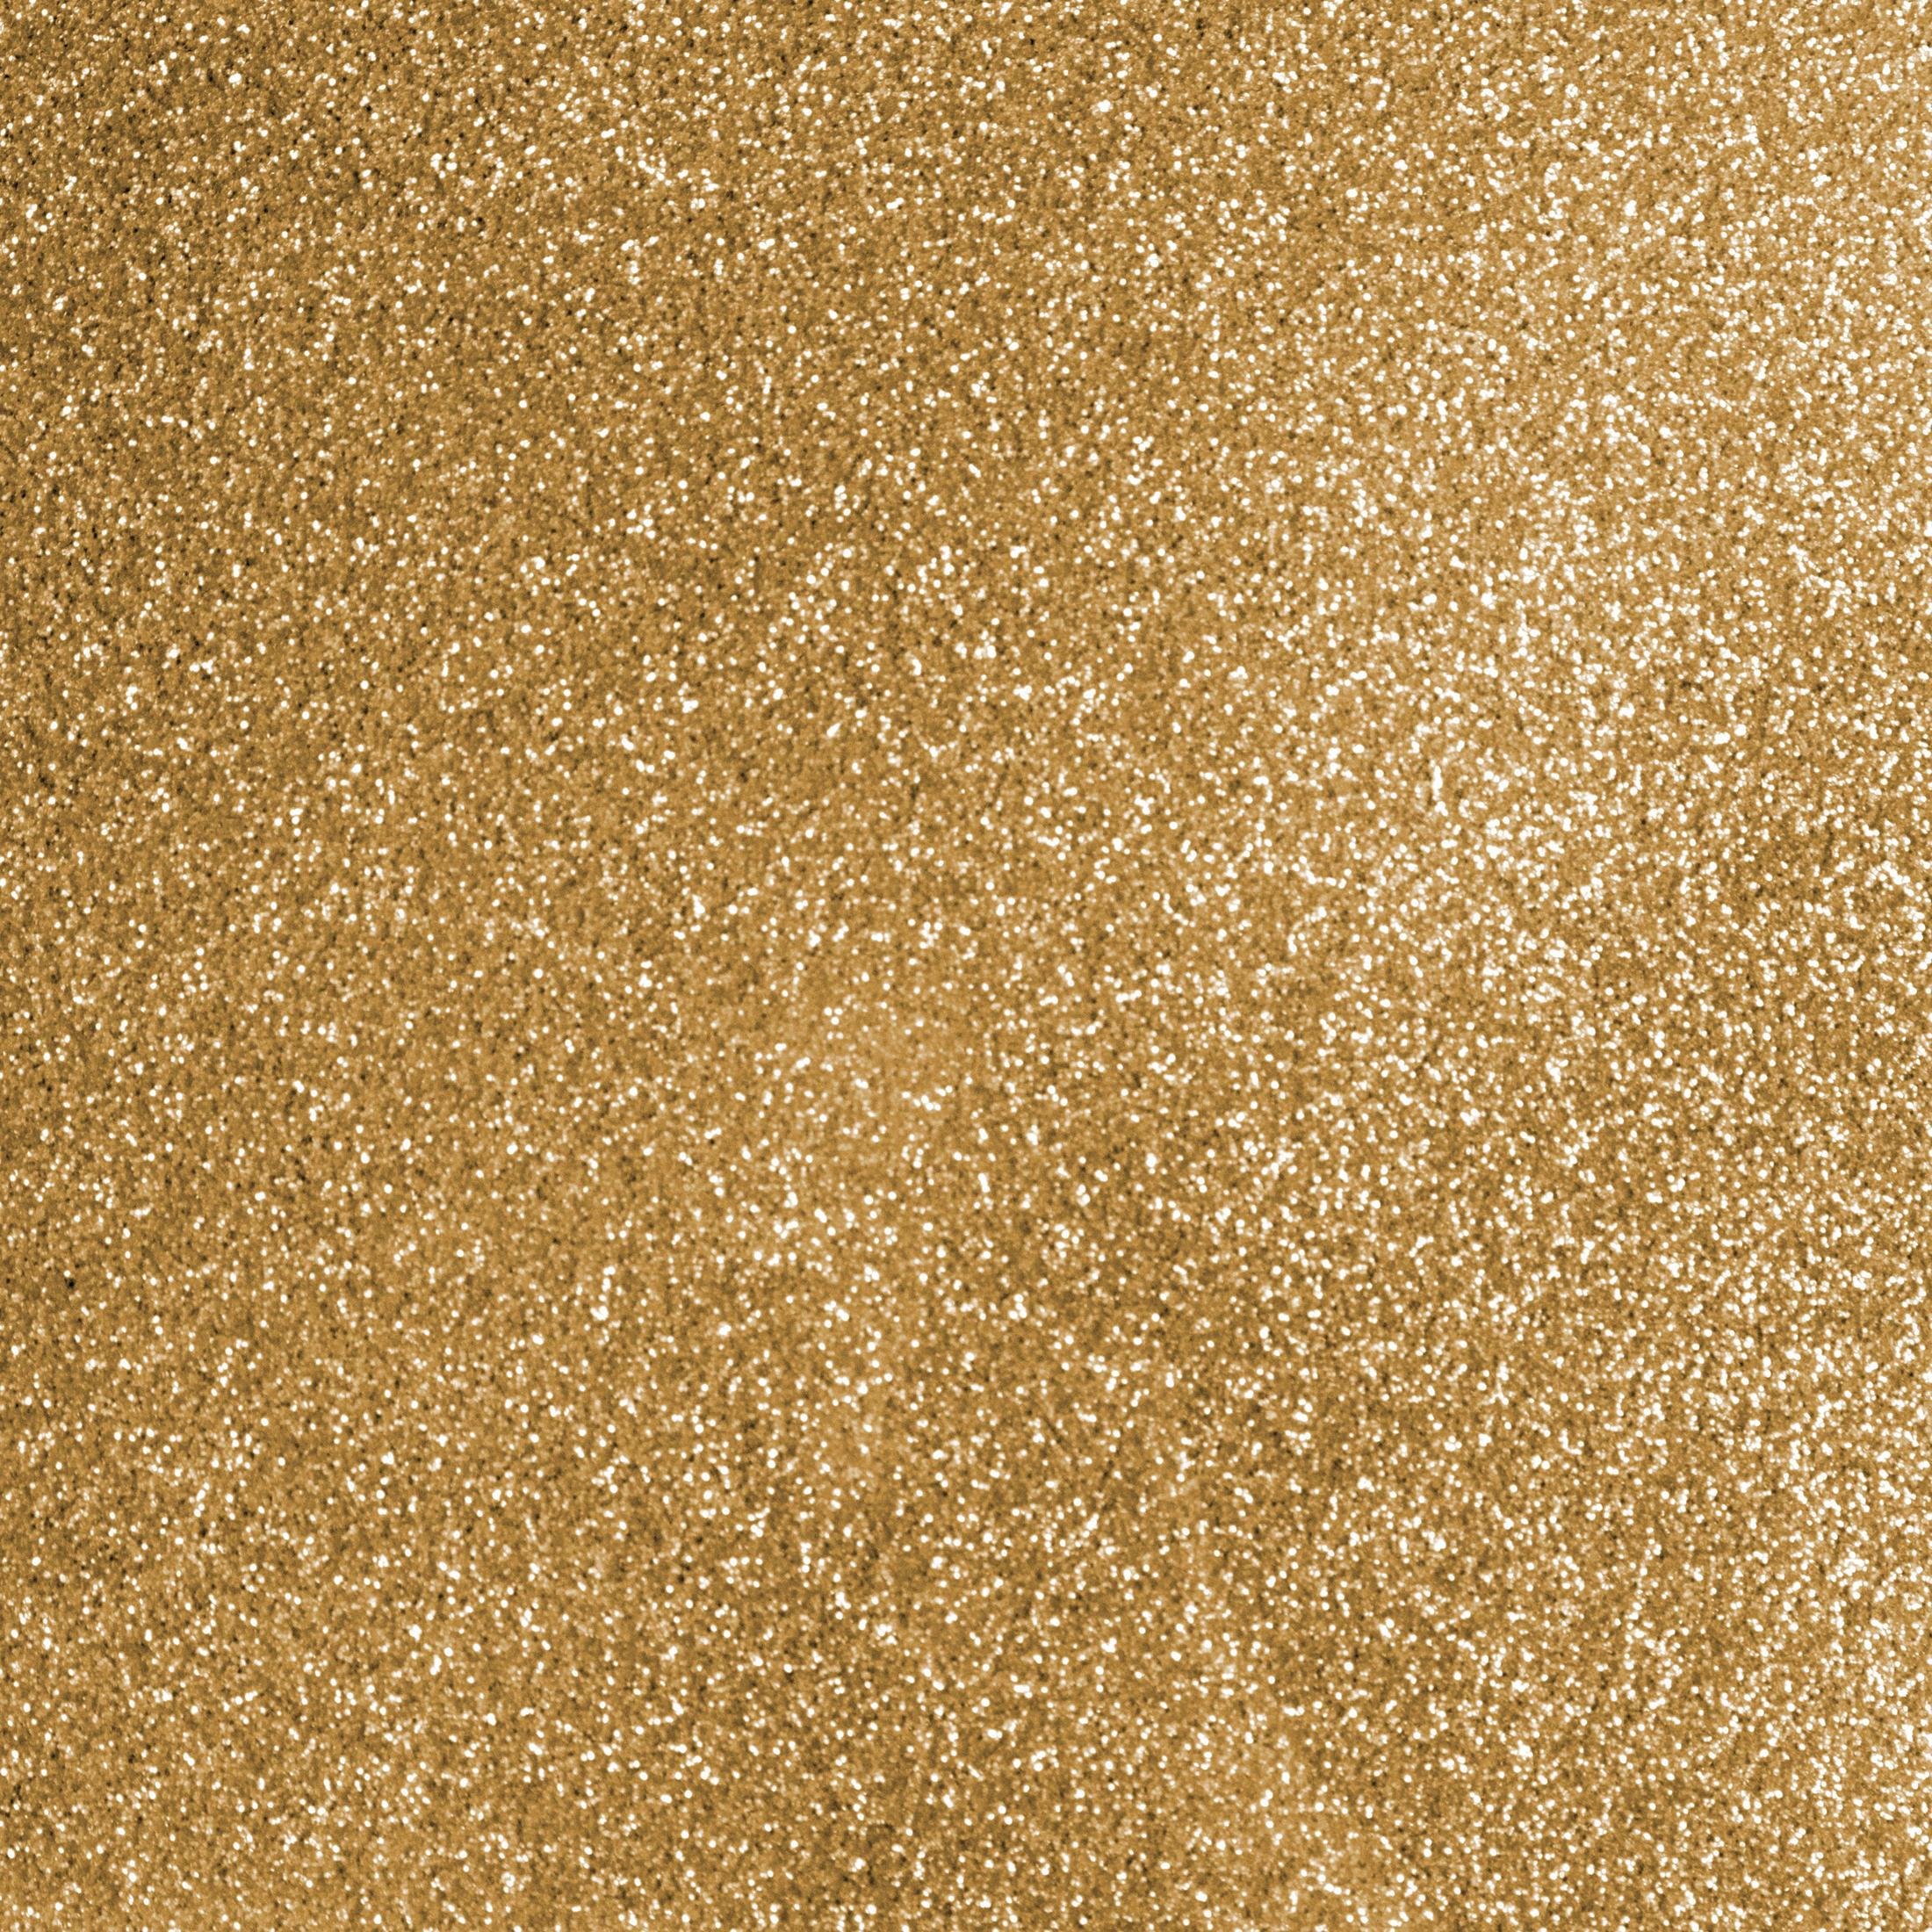 GOLD CRICUT Gold GLITTER Glitter Bügelfolie SHEET 2008673 1 SIO